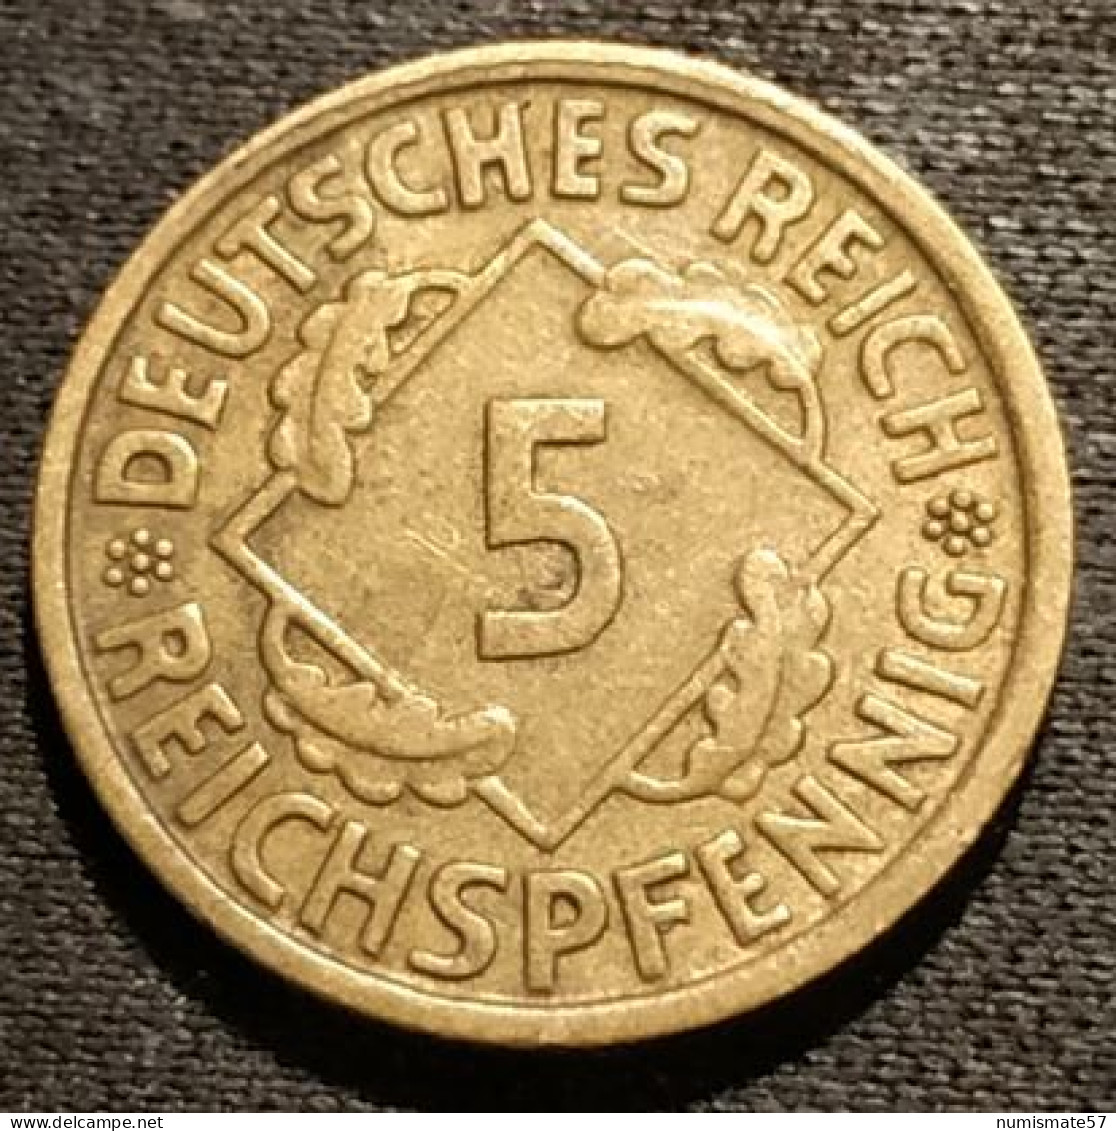 ALLEMAGNE - GERMANY - 5 REICHSPFENNIG 1935 E - KM 39 - 5 Reichspfennig